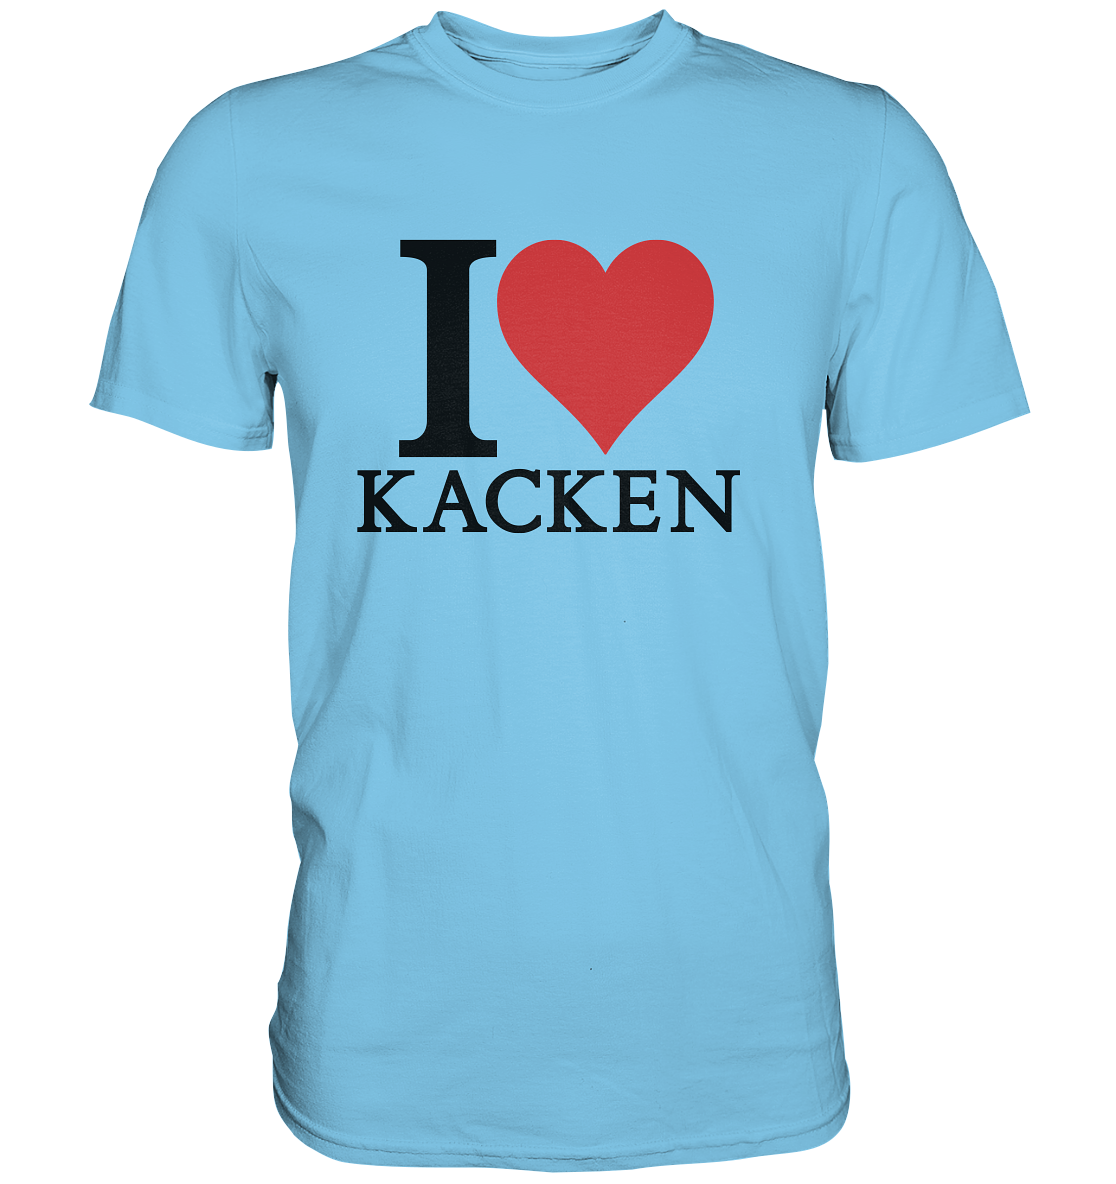 I love kacken - Baufun Shop